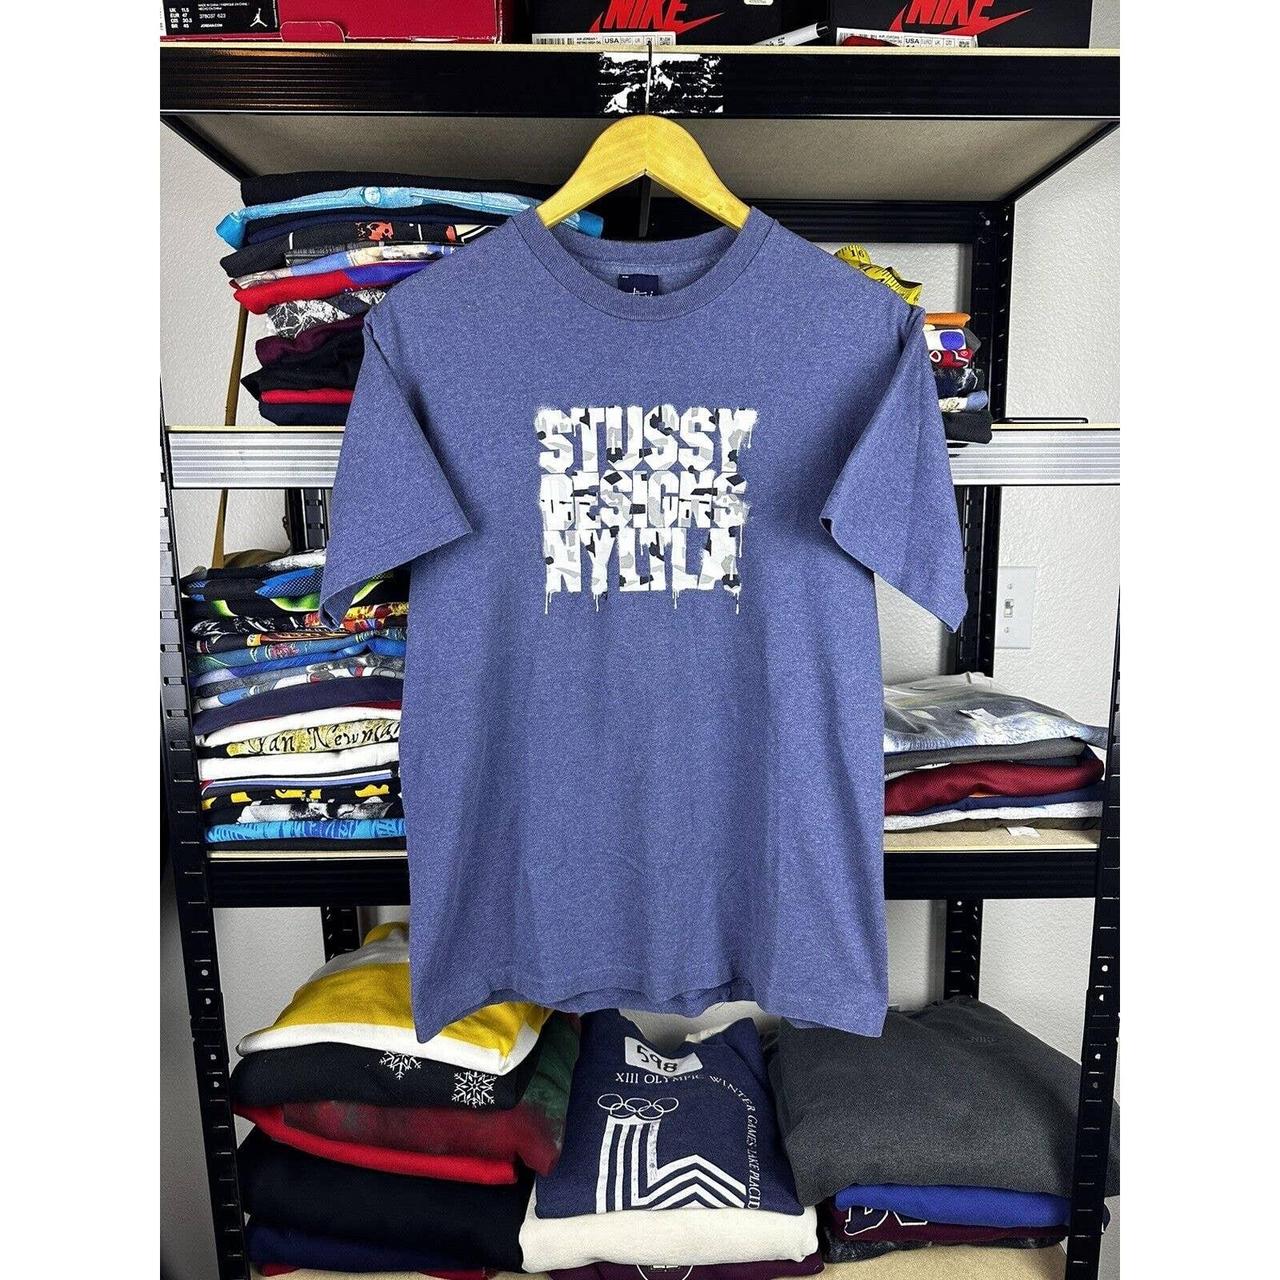 Vintage 90s Stussy Designs T Shirt Blue Made In USA... - Depop